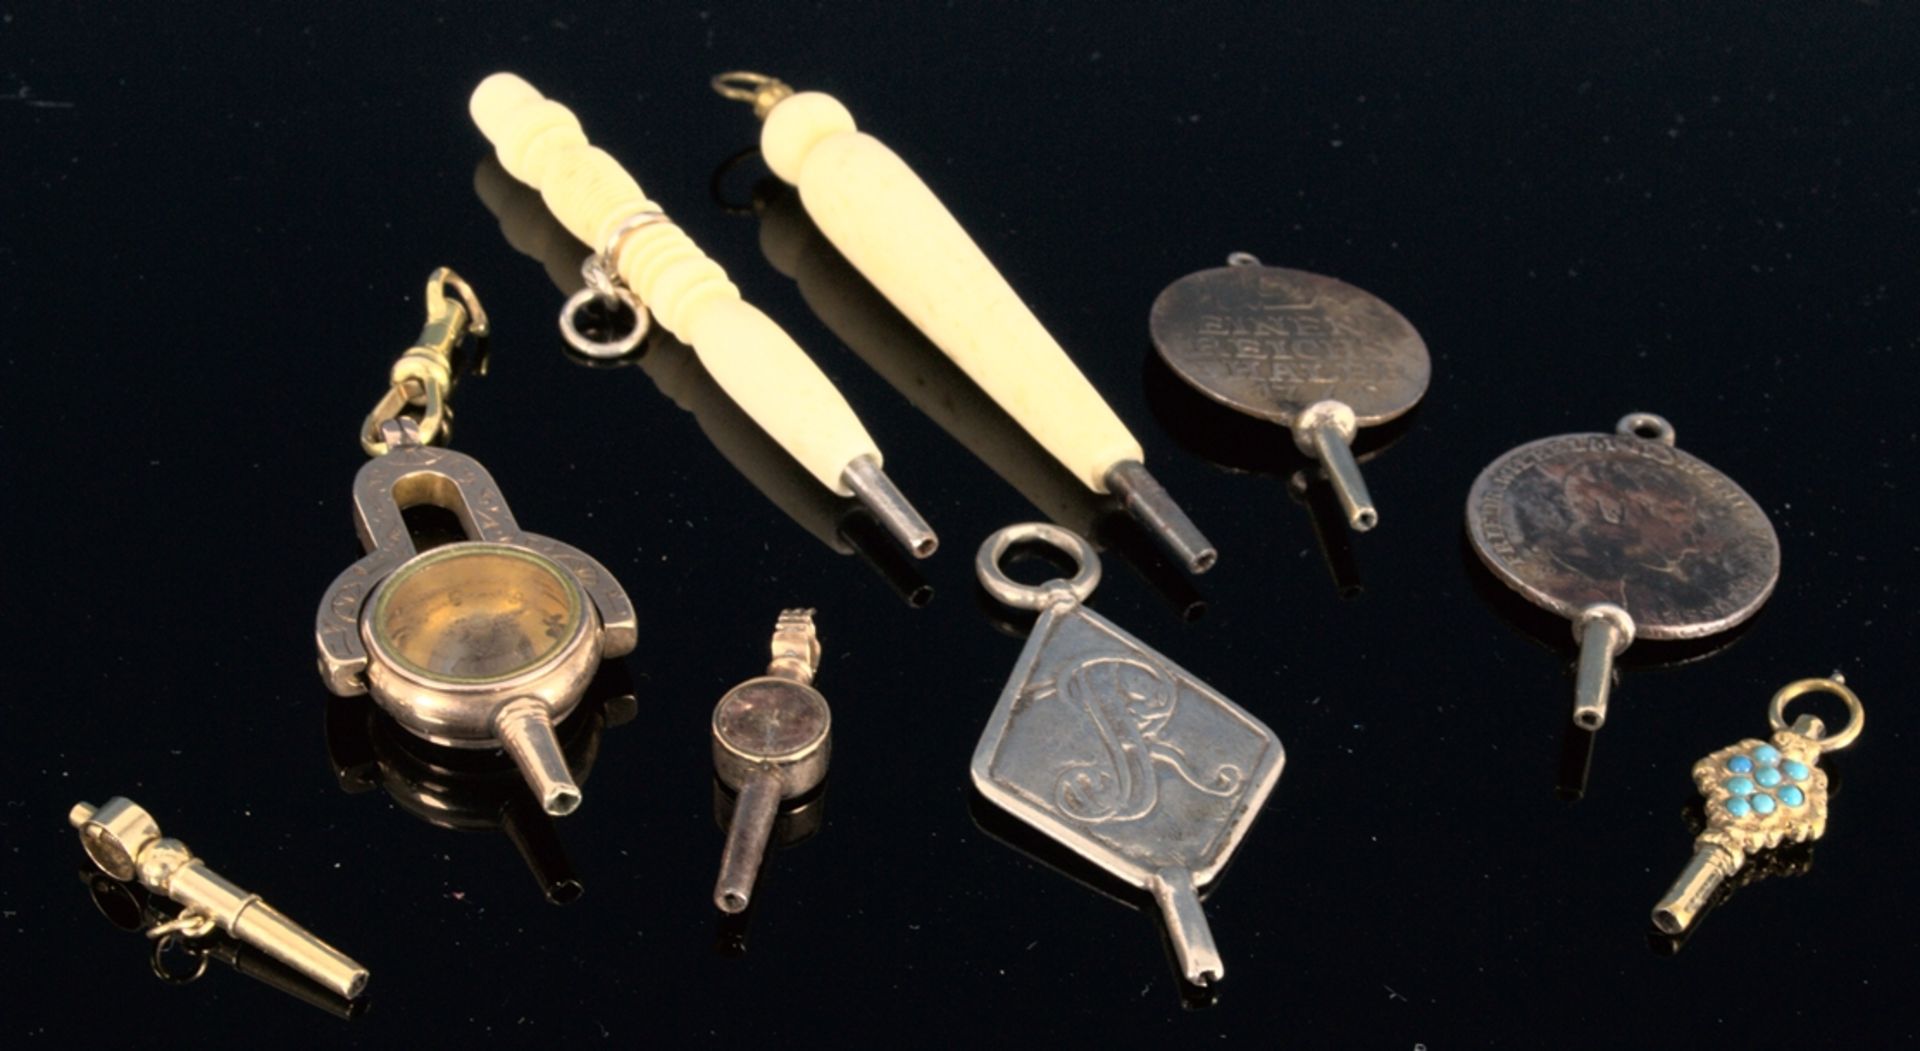 9teilige Sammlung versch. Taschenuhrenschlüssel, überwiegend 19. Jhd. Versch. Alter, Größen,